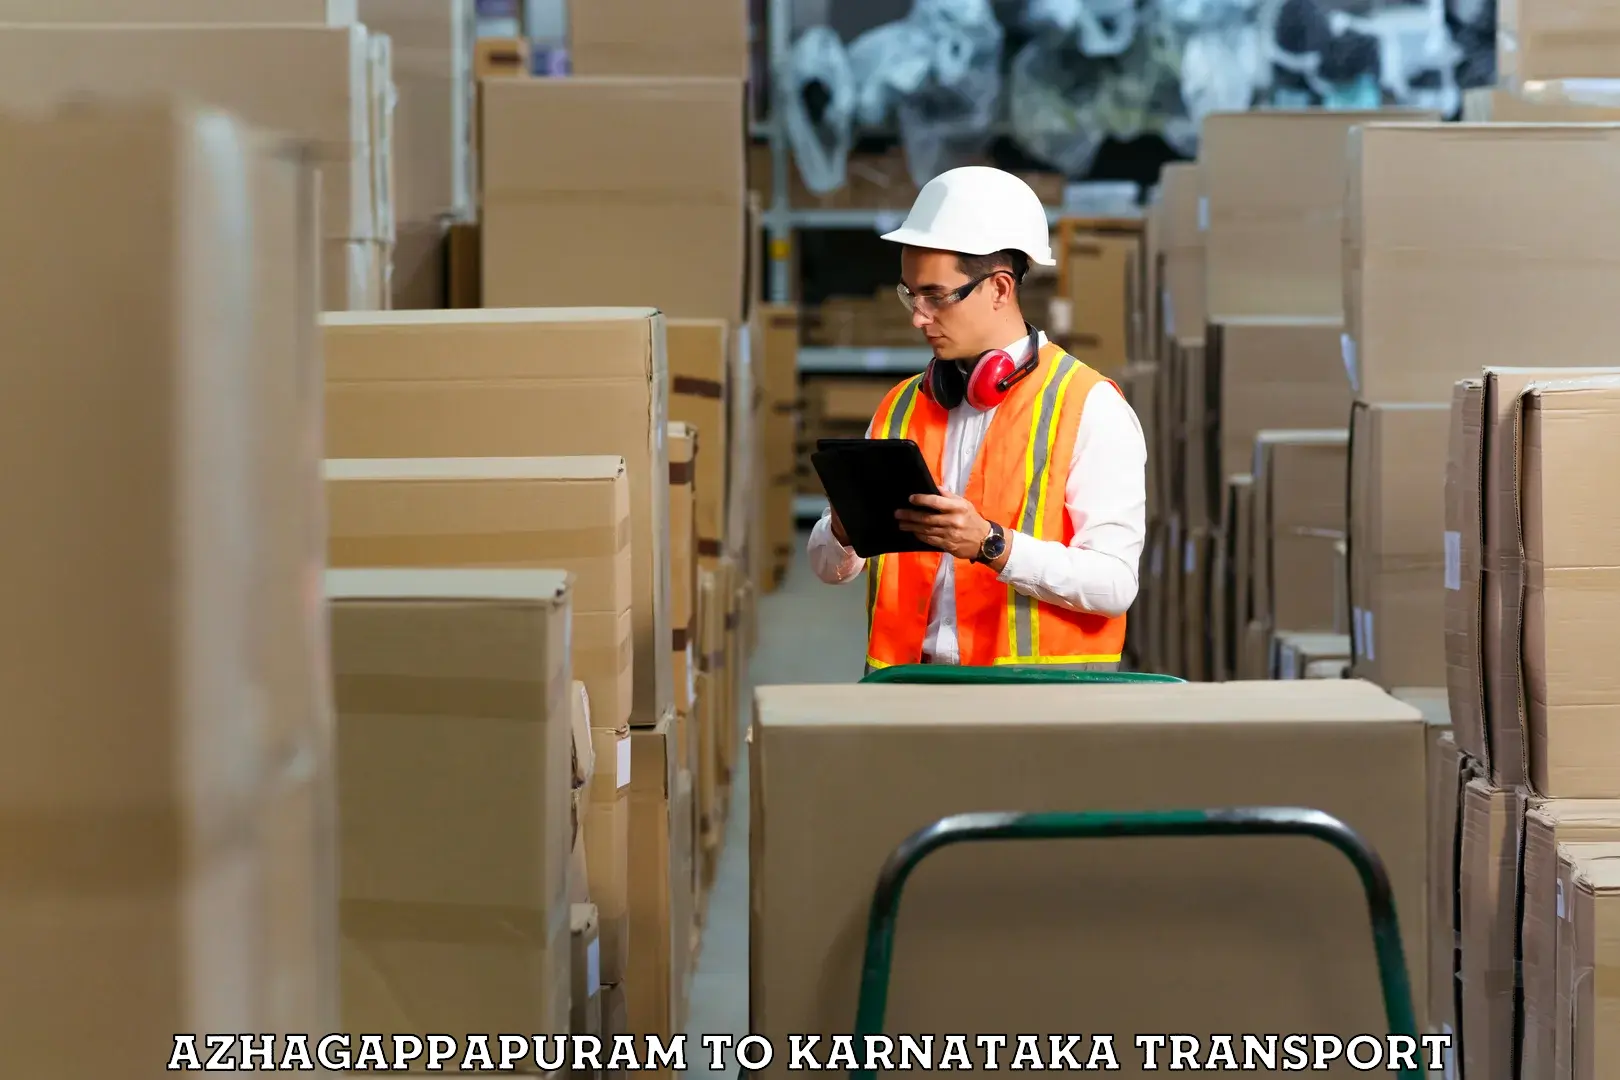 Shipping partner Azhagappapuram to Siddapur